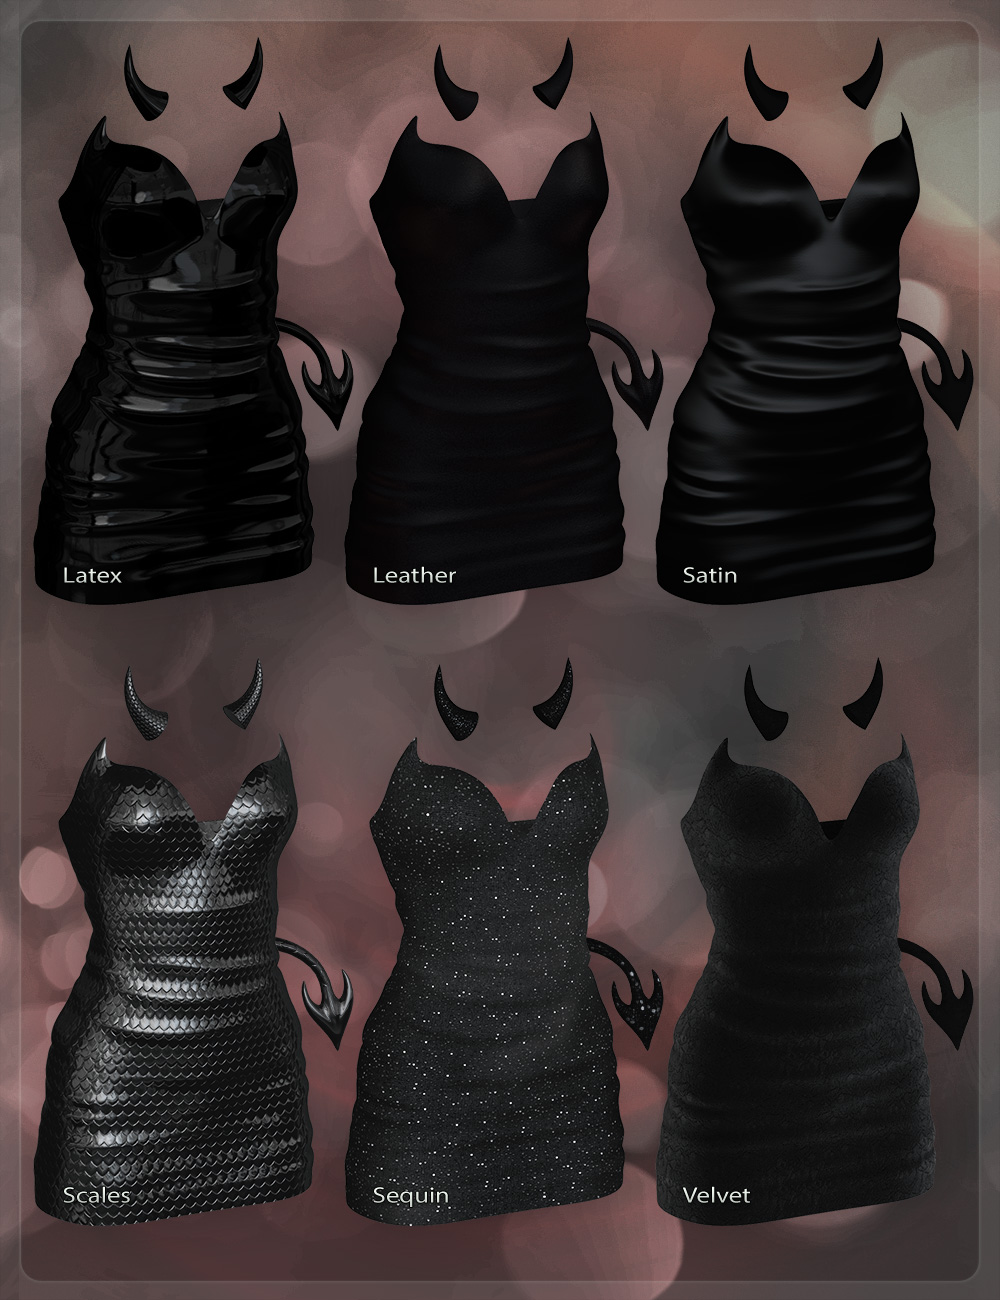 Evalle Outfit by: DemonicaEviliusJessaii, 3D Models by Daz 3D